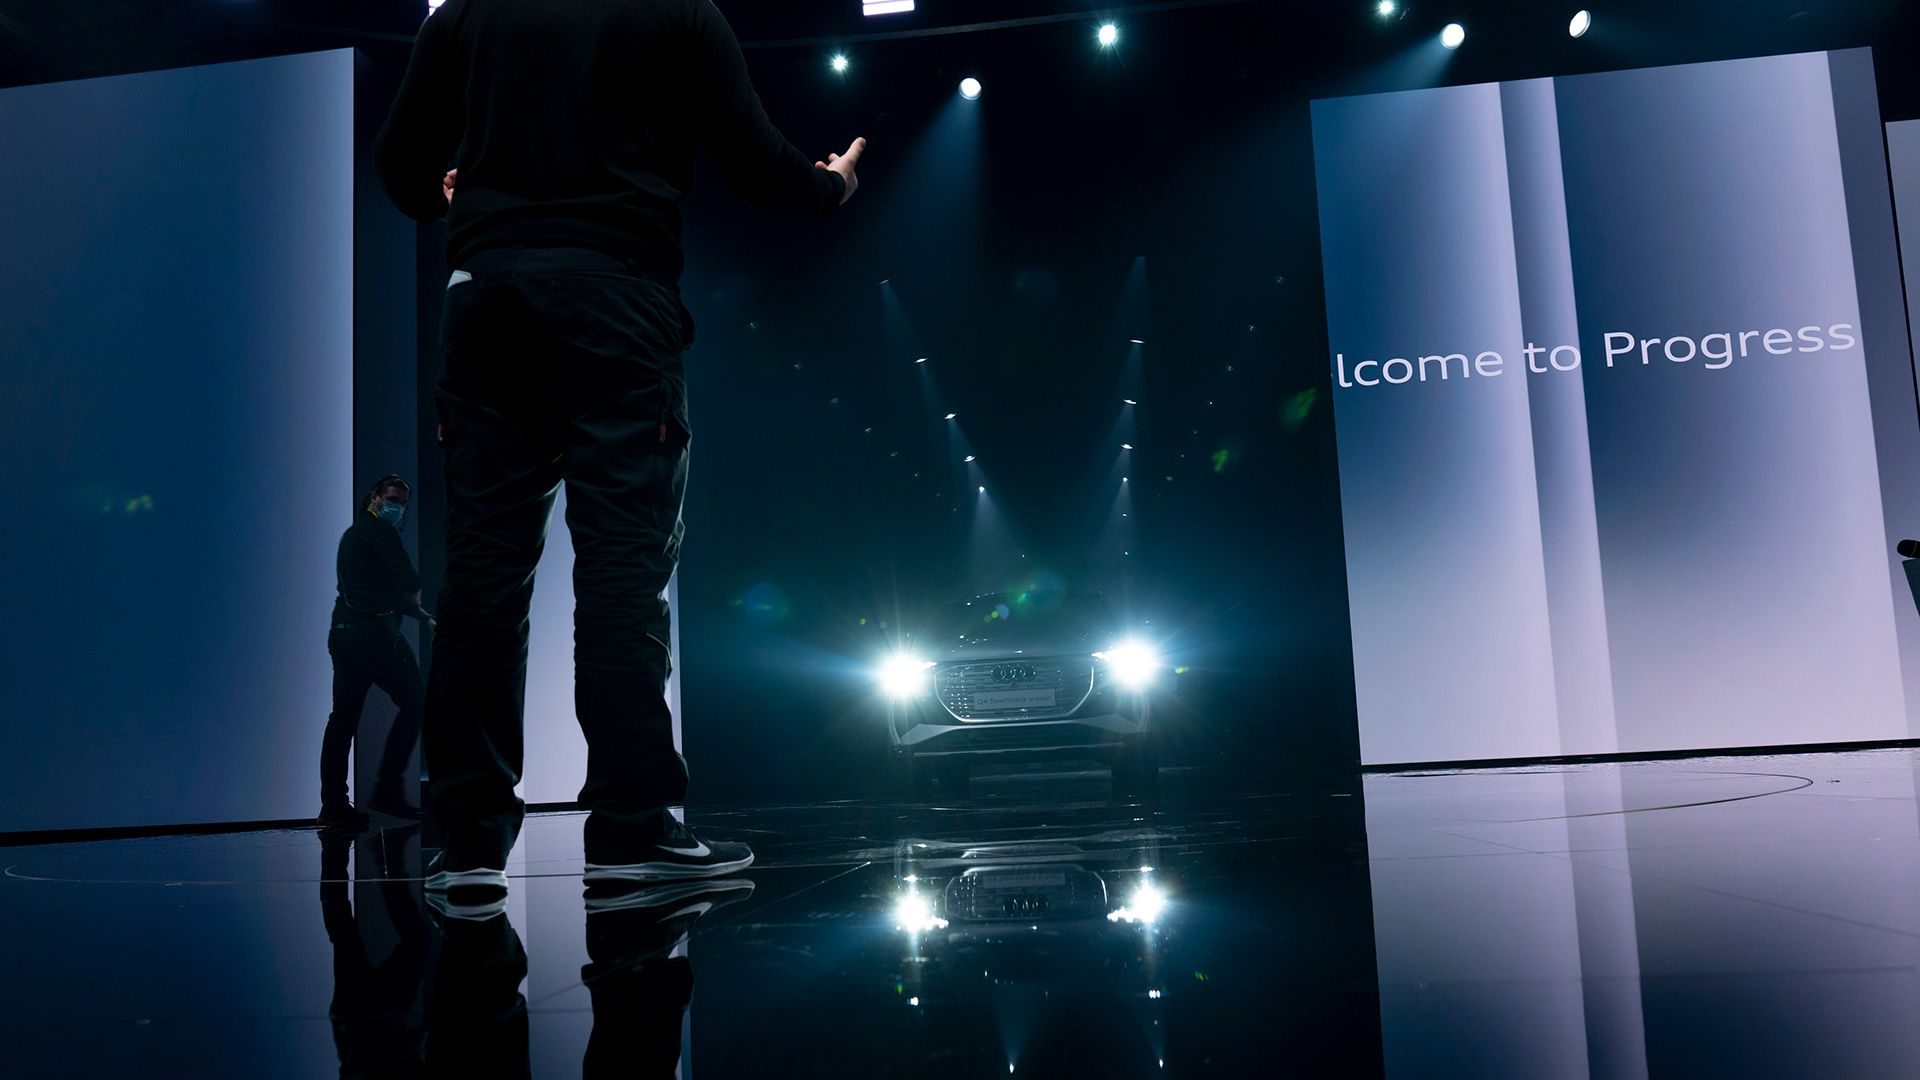 Audi Q4 e-tron fa il suo ingresso in scena con i proiettori accesi. Su uno schermo a destra si vede la scritta "Welcome to Progress".